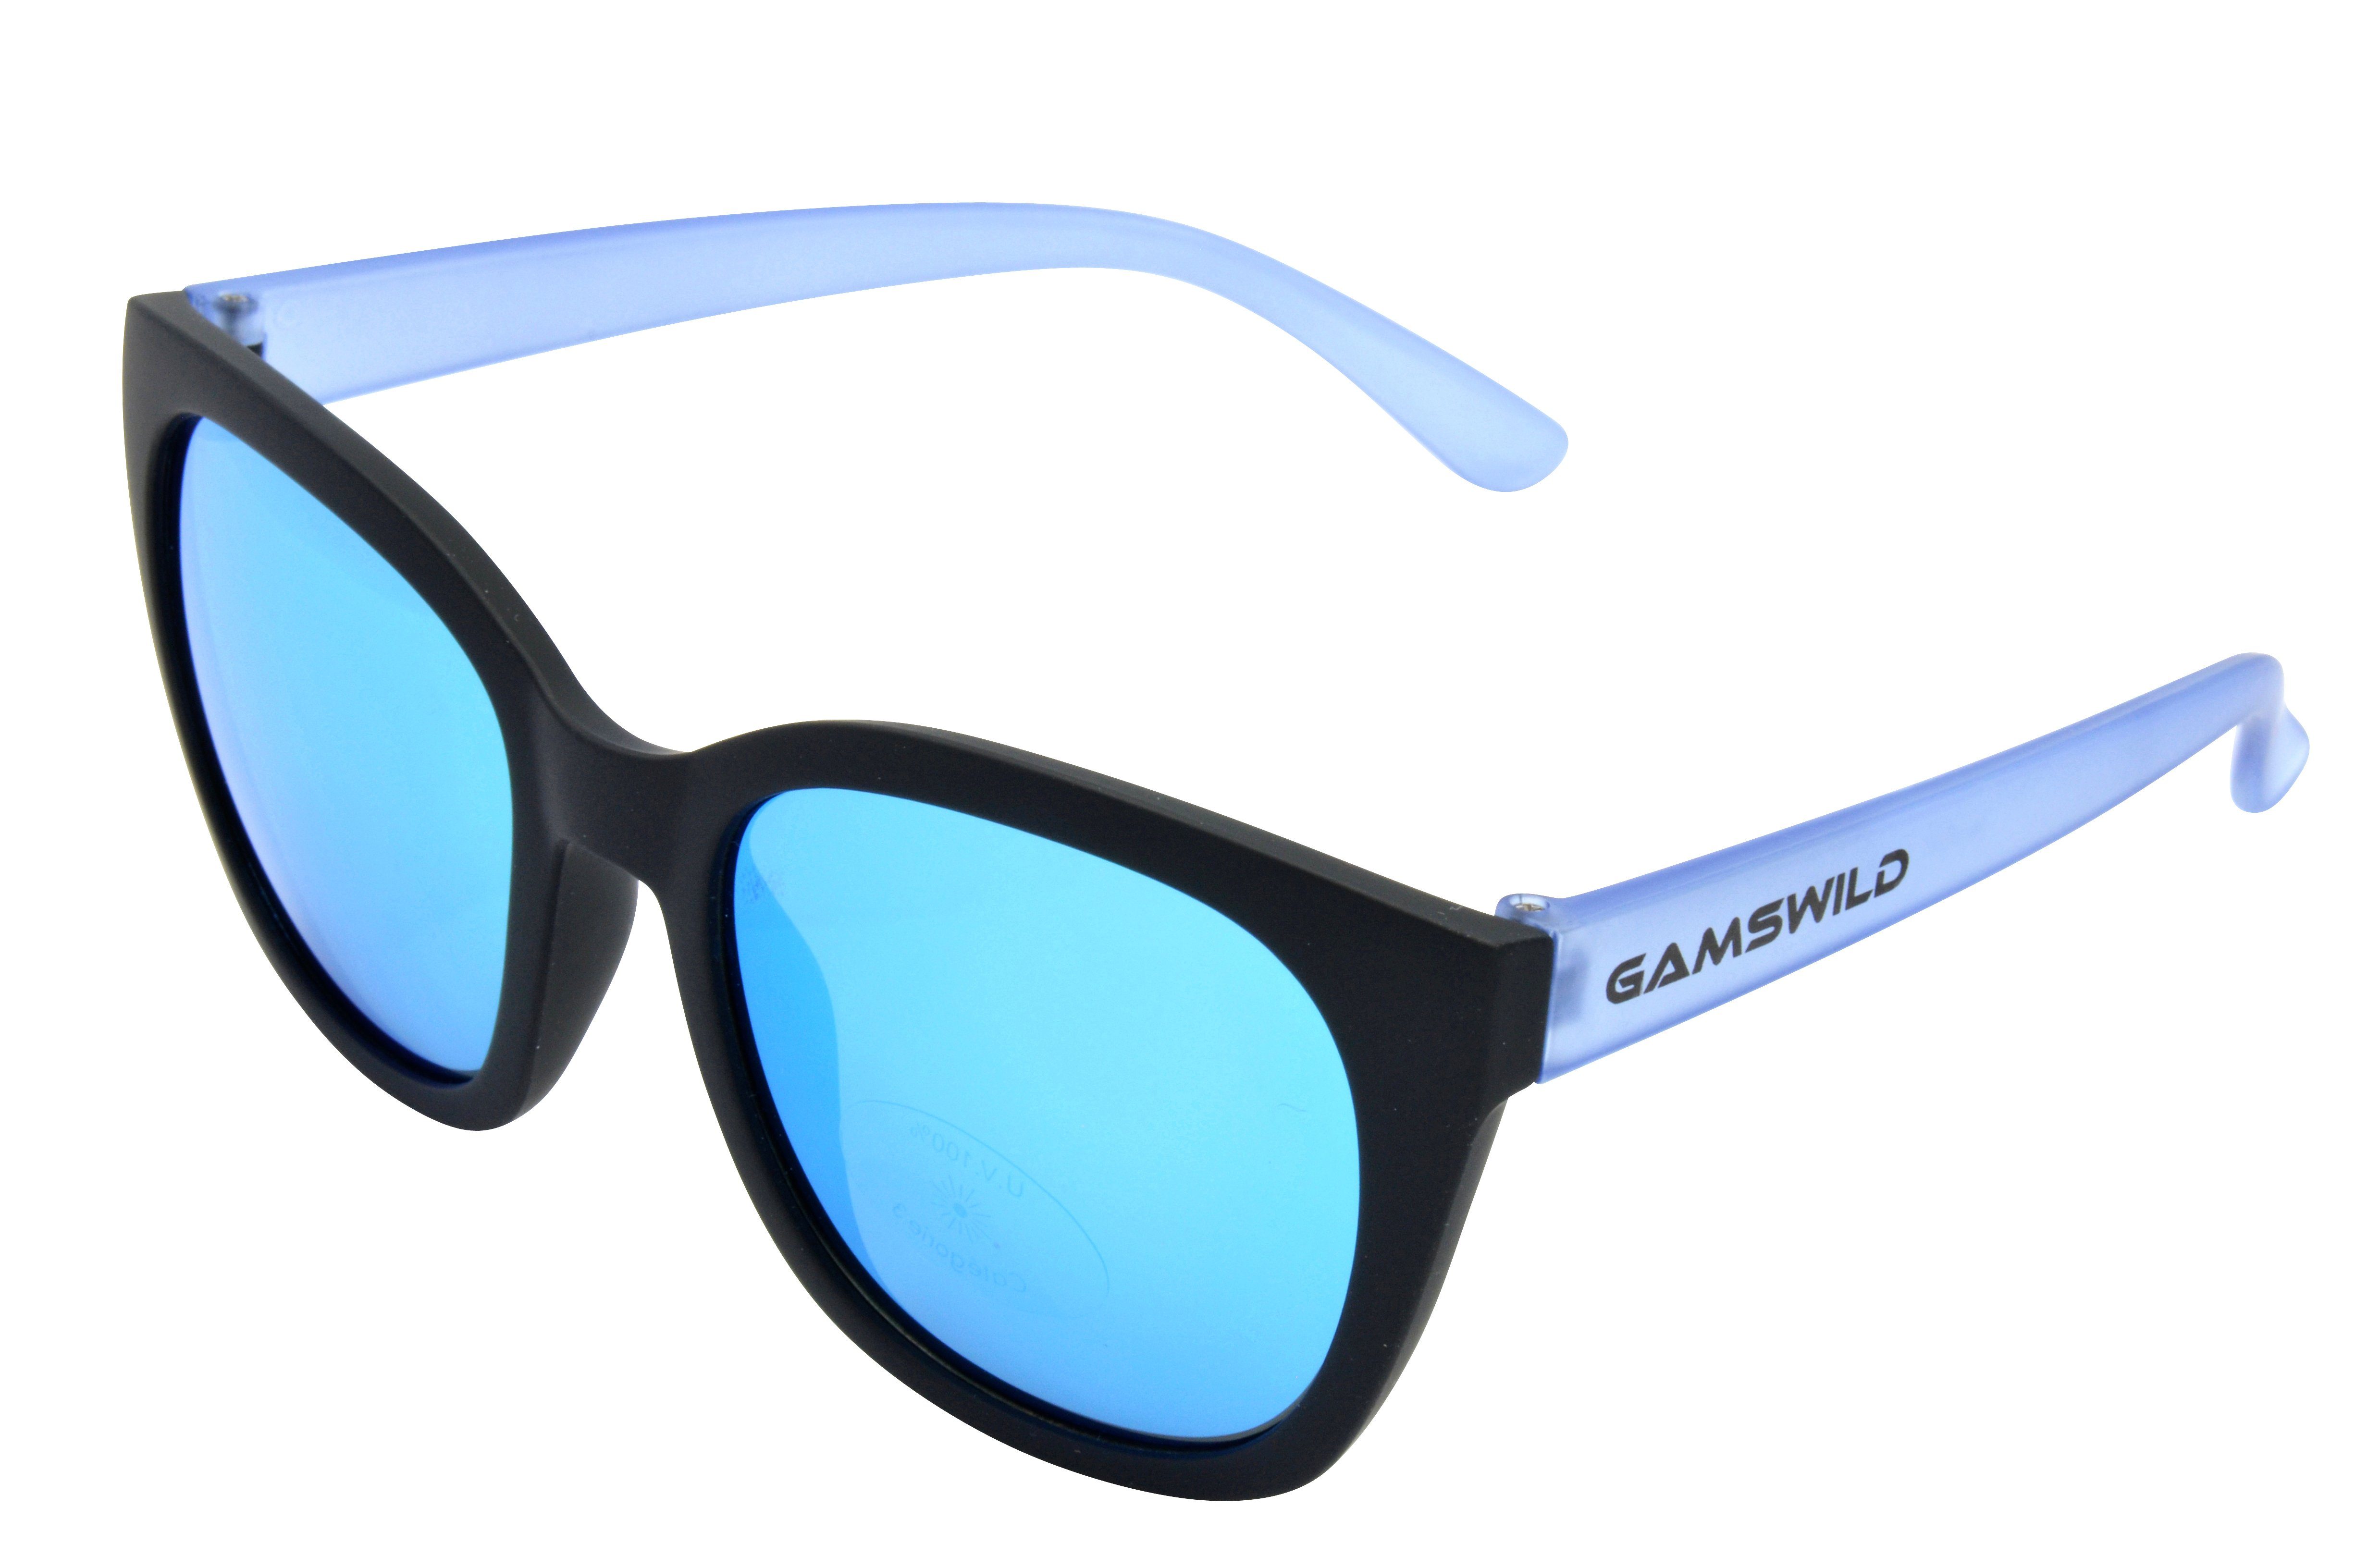 Gamswild Sonnenbrille Mädchen WJ7517 Damen 8-18 Unisex, GAMSKIDS blau, Jahre kids Jugendbrille halbtransparenter pink, grau Rahmen Kinderbrille